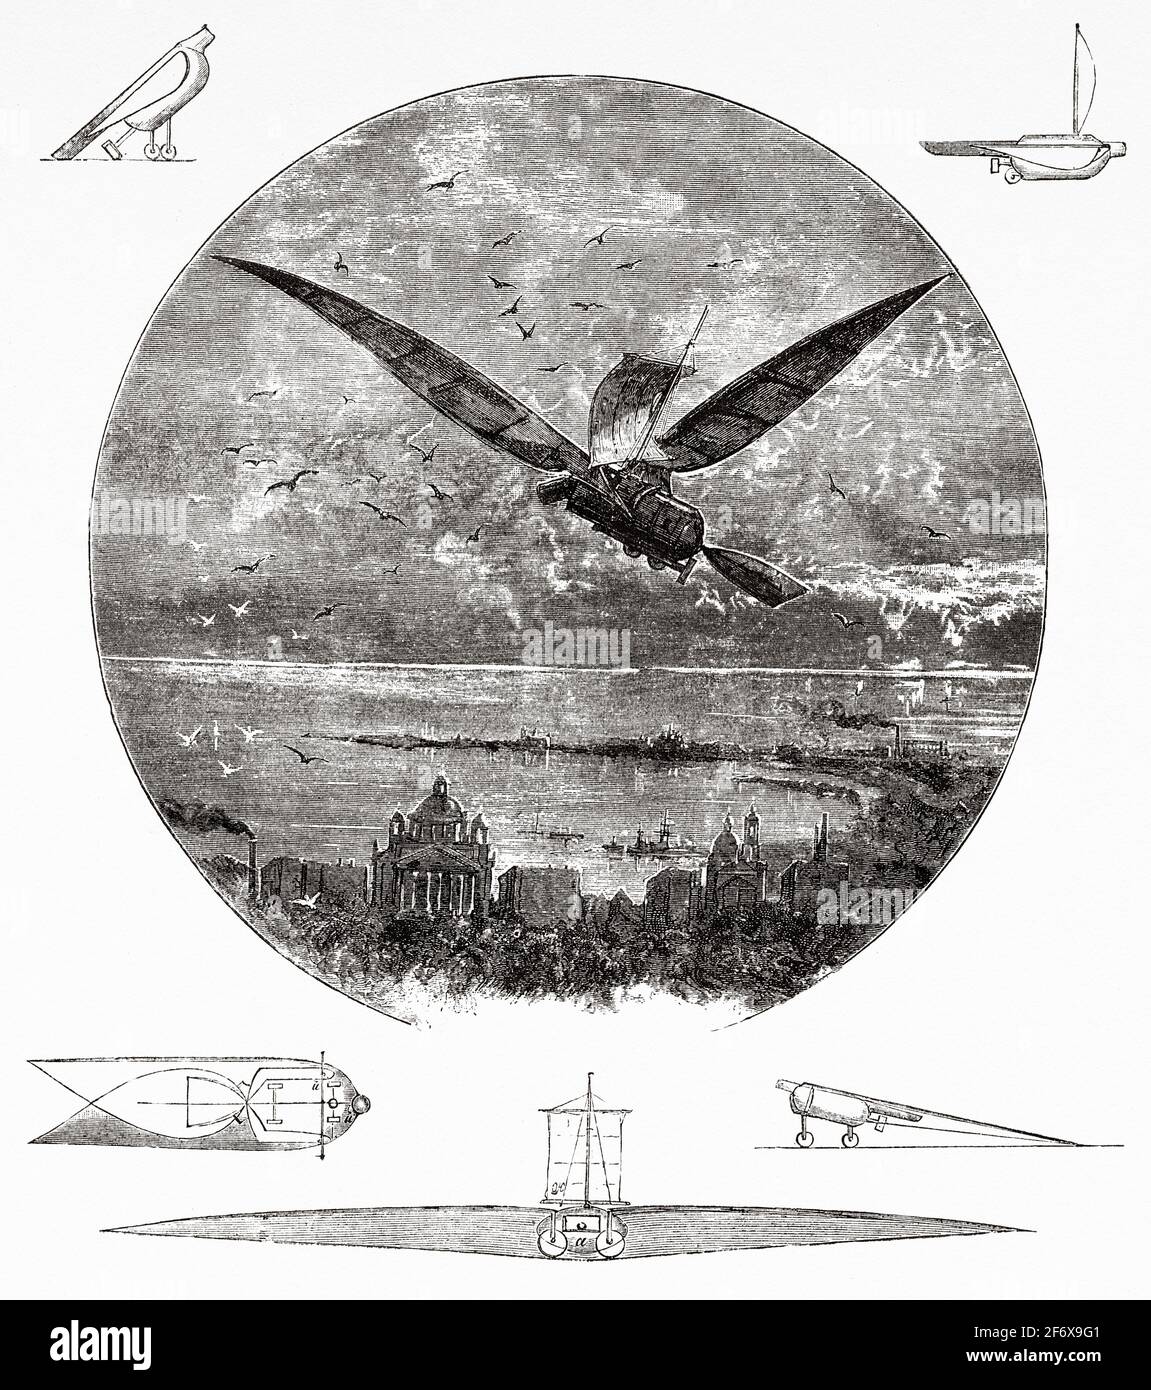 Apparecchio volante alato del XIX secolo dell'inventore polacco Jan Józef Baranowski. Antica illustrazione del 19 ° secolo inciso da El Mundo Ilustrado 1879 Foto Stock